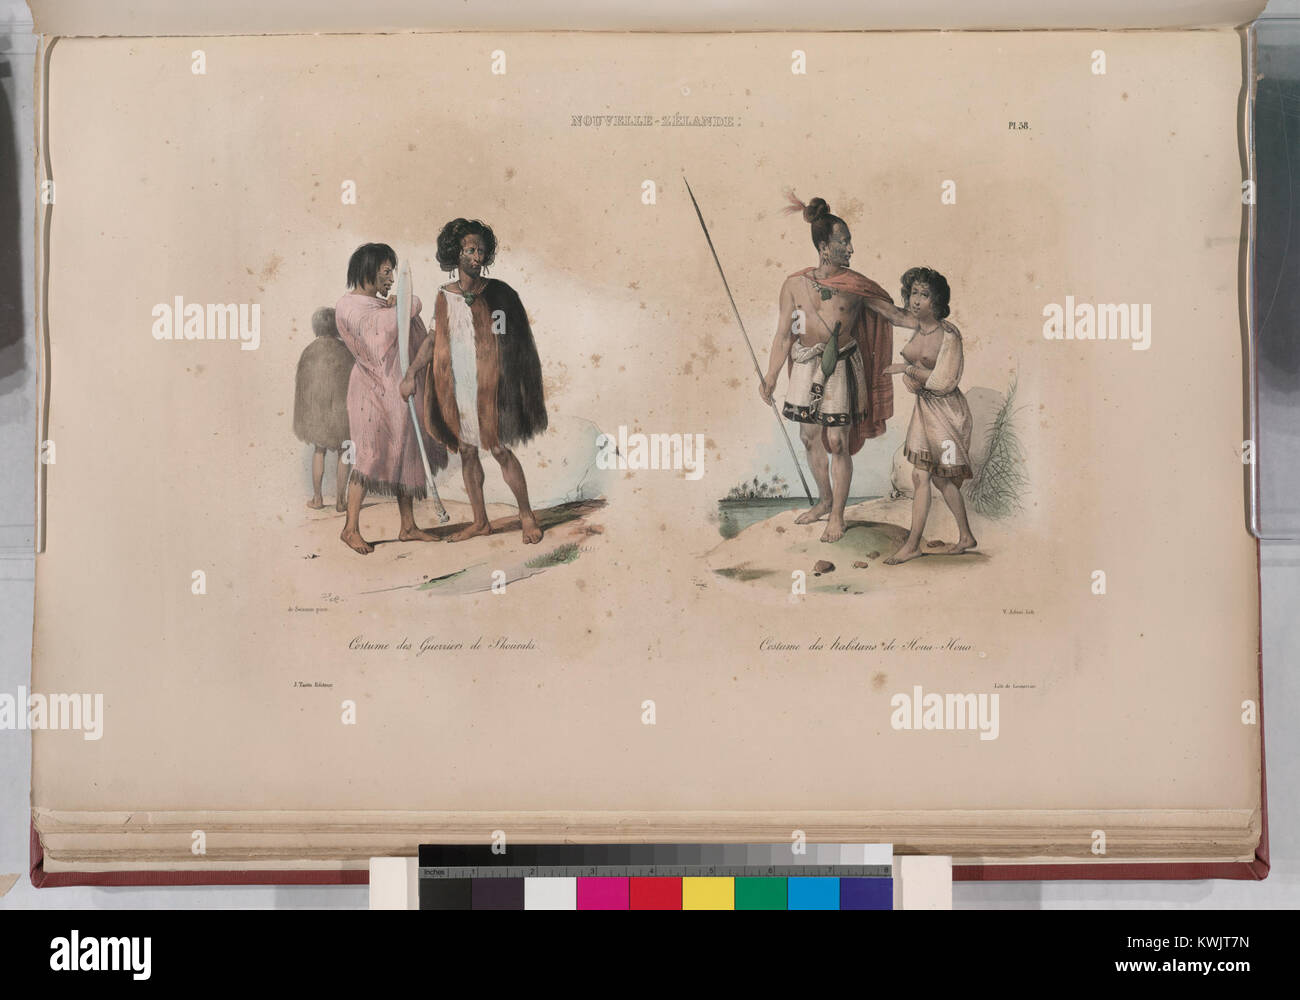 Nouvelle - Zélande. Costume des guerriers de Shouraki., des costumes des habitans de Houa-Houa (NYPL)13624459-1266827 b Banque D'Images